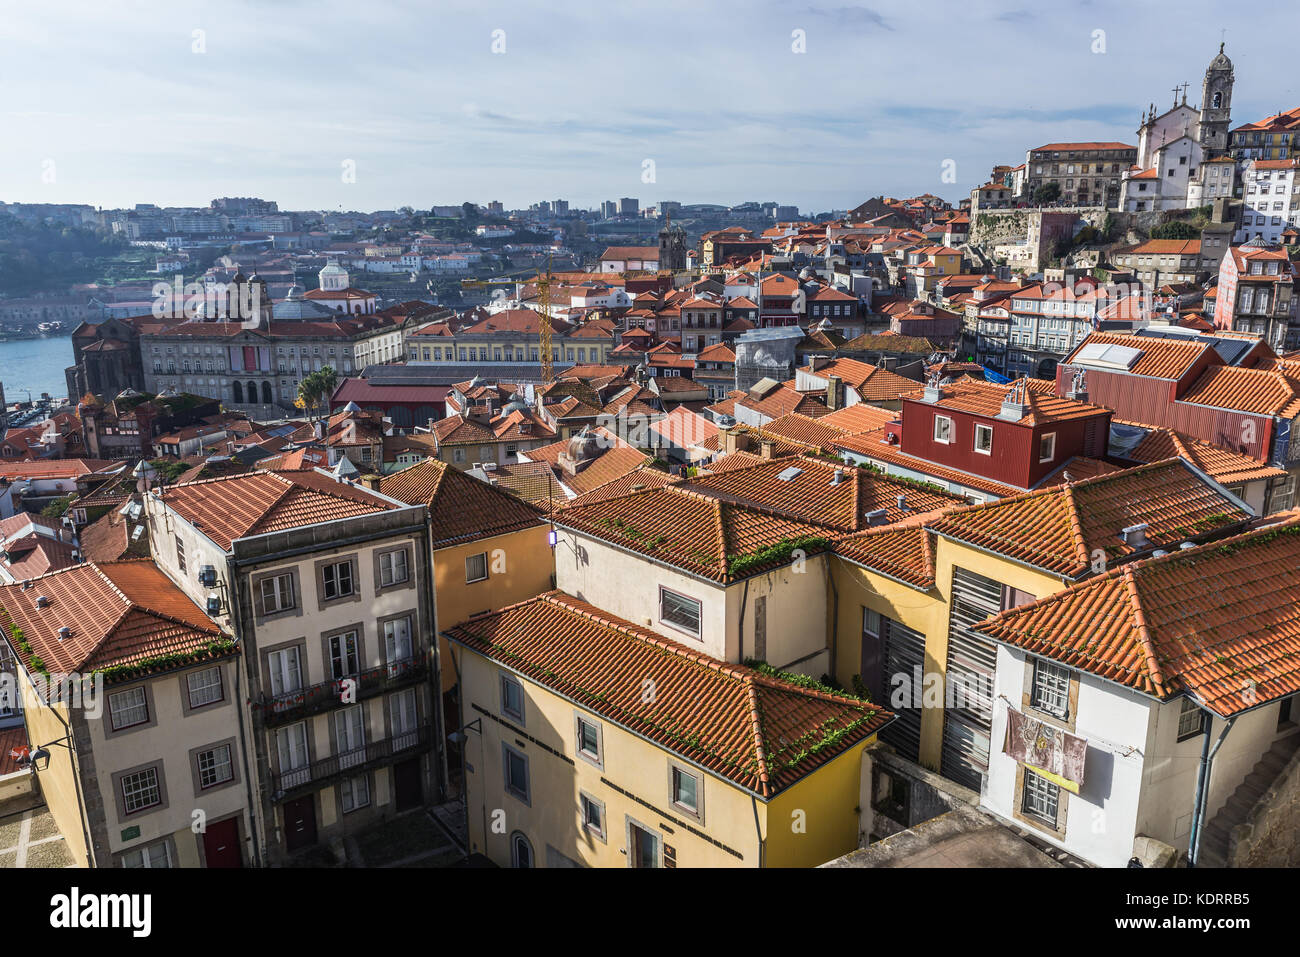 Vista aerea della città di Porto sulla penisola iberica, la seconda città più grande del Portogallo. Palazzo Bolsa sulla sinistra Foto Stock